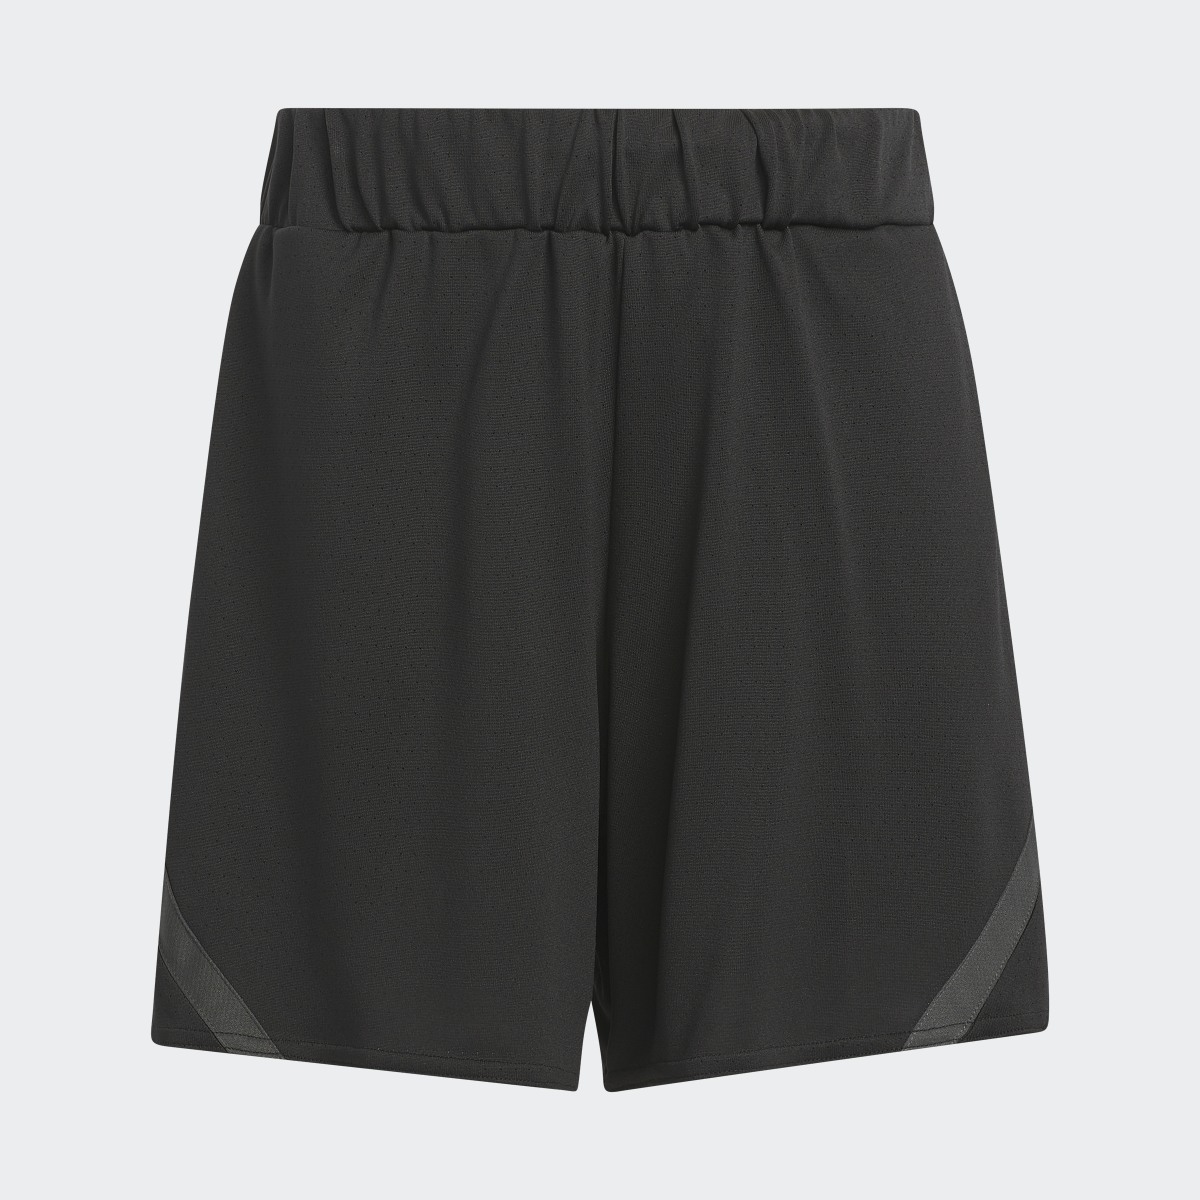 Adidas Select Basketball Shorts. 4